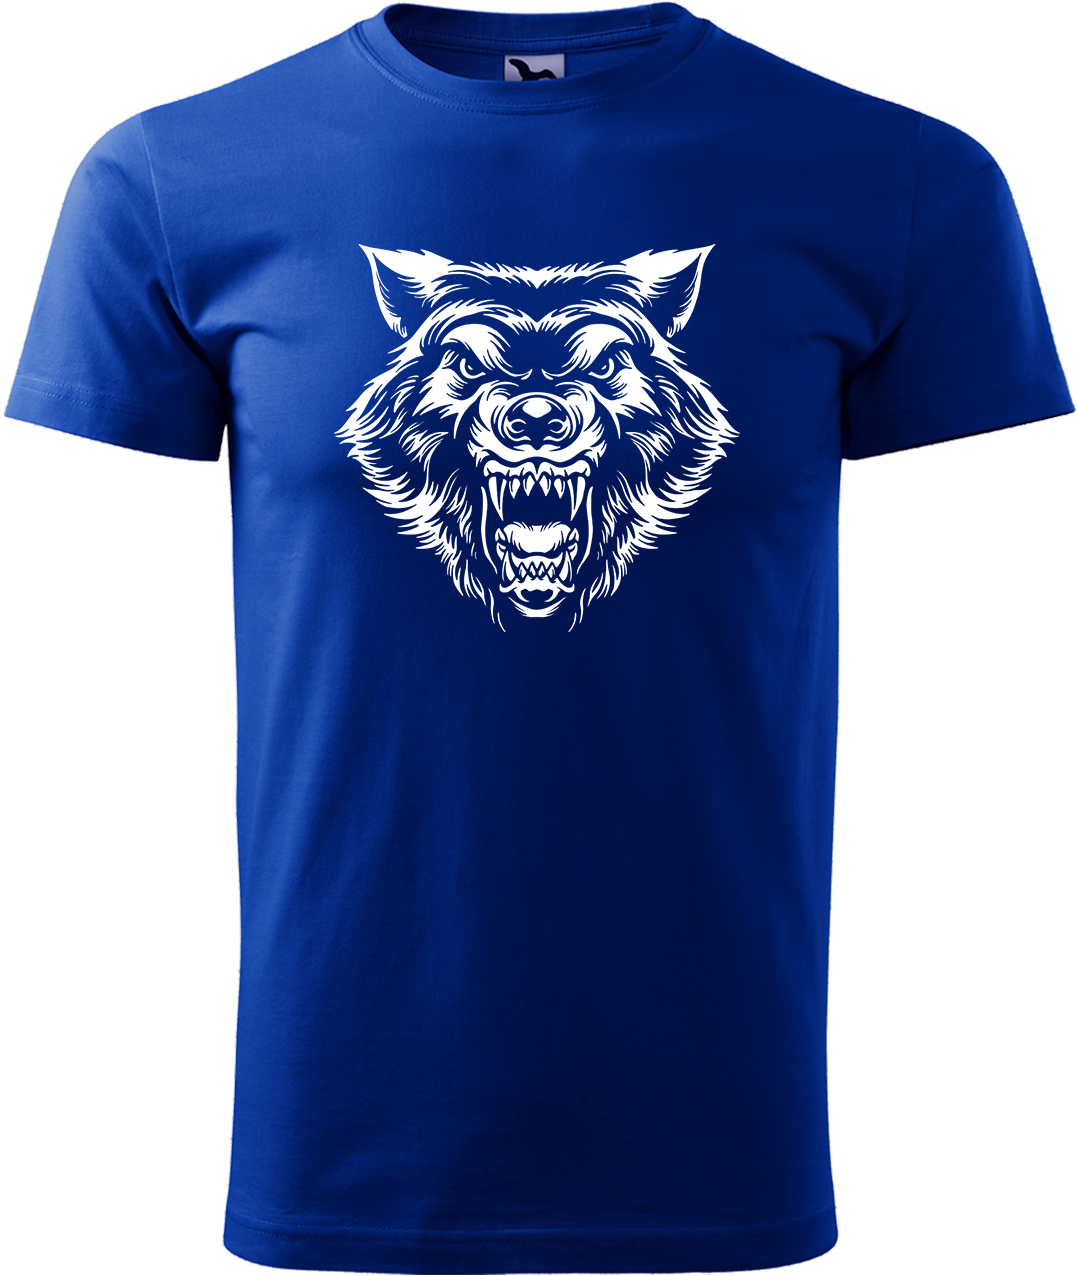 Pánské tričko s vlkem - Rozzuřený vlk Velikost: L, Barva: Královská modrá (05), Střih: pánský